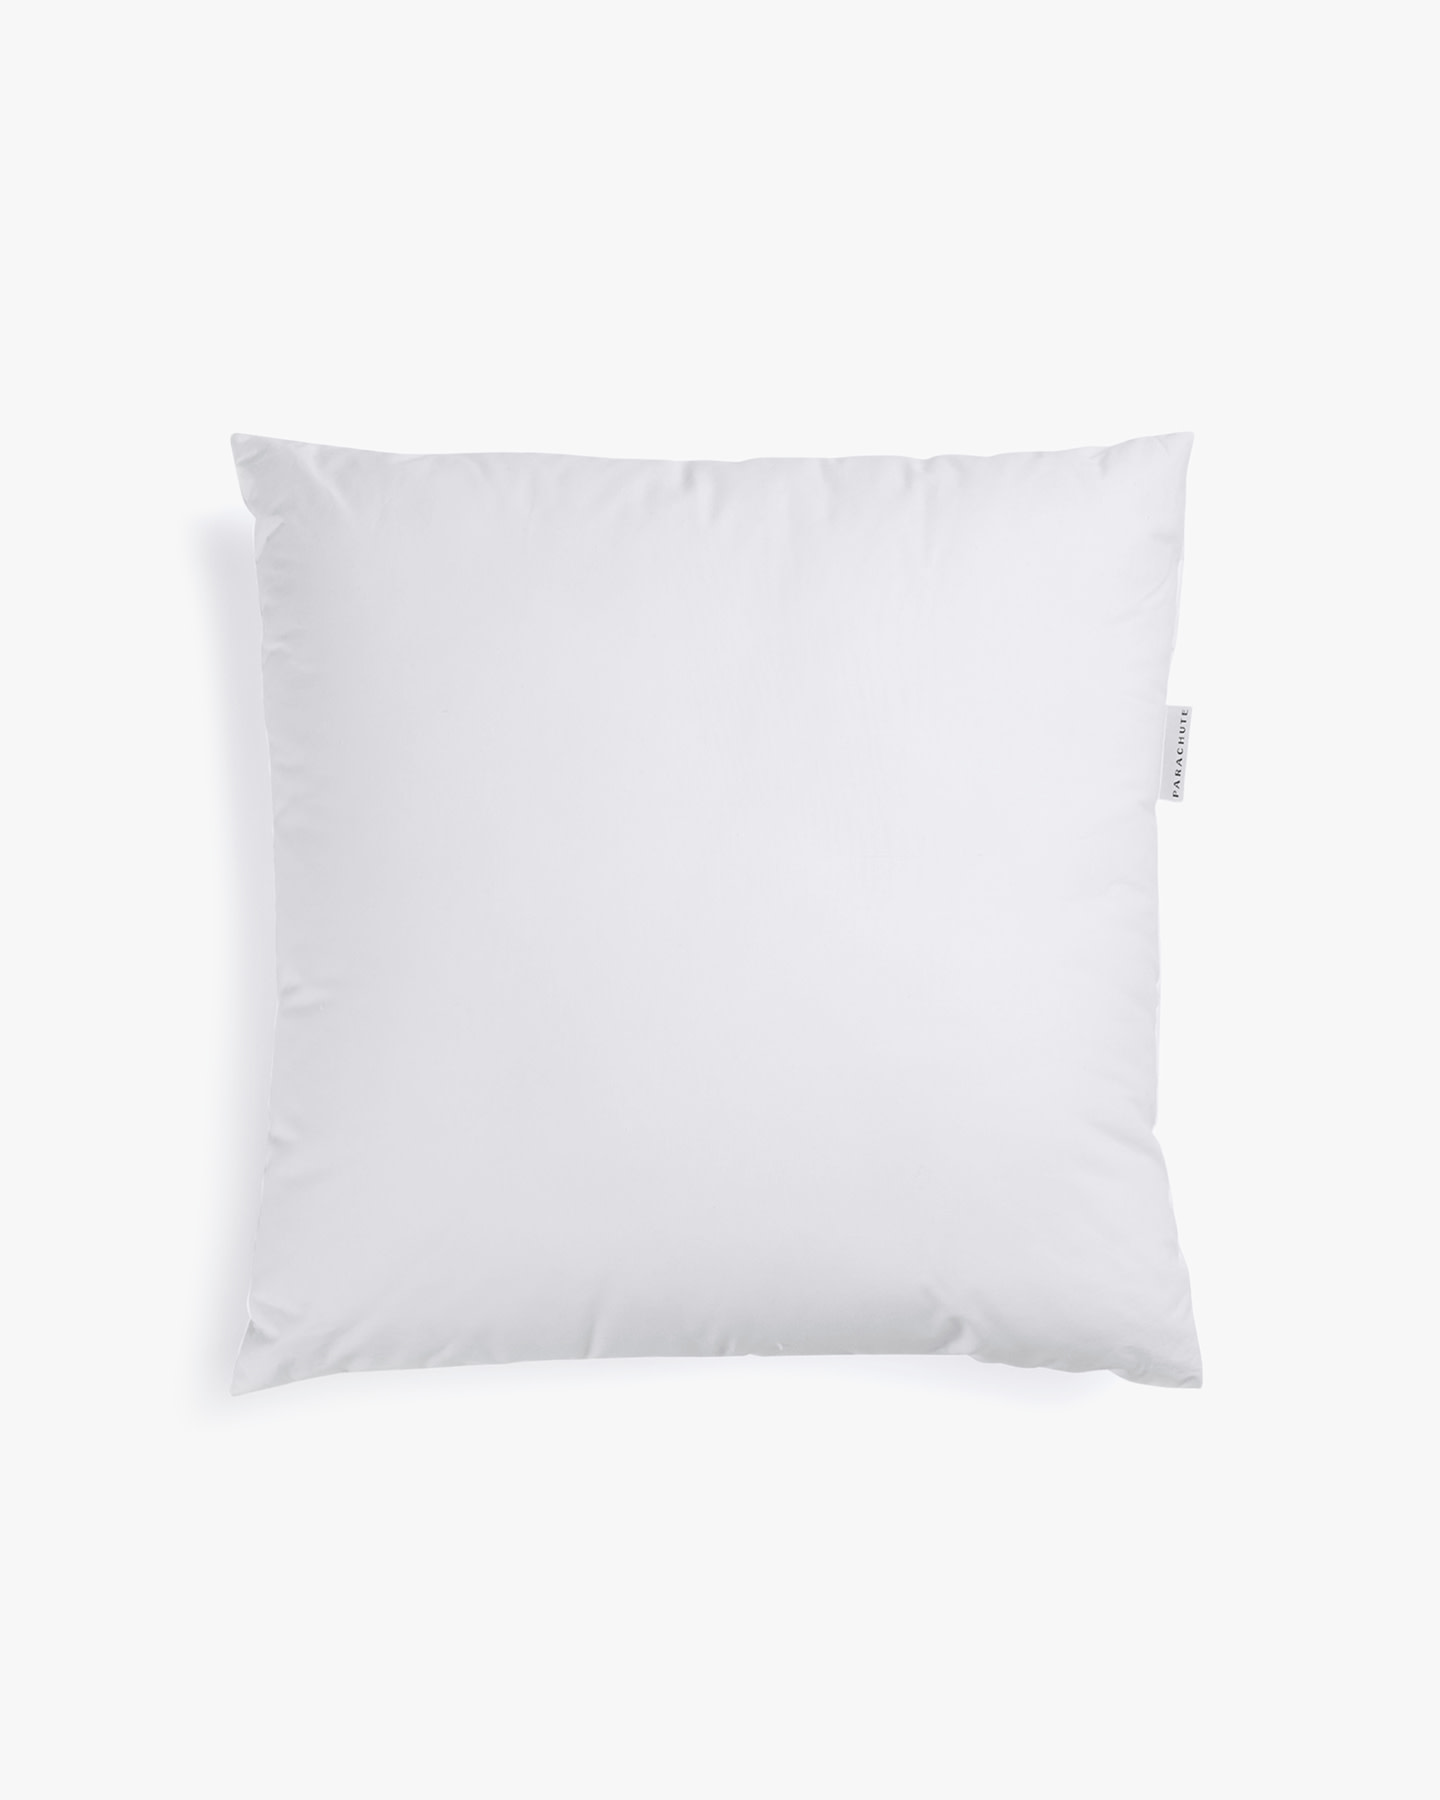 Down Alternative Pillow Insert, Feather Pillow Insert, Down Pillow Insert,  Pillows, Pillow, Pillow Inserts, 20x20, 18x18, lumbar pillow